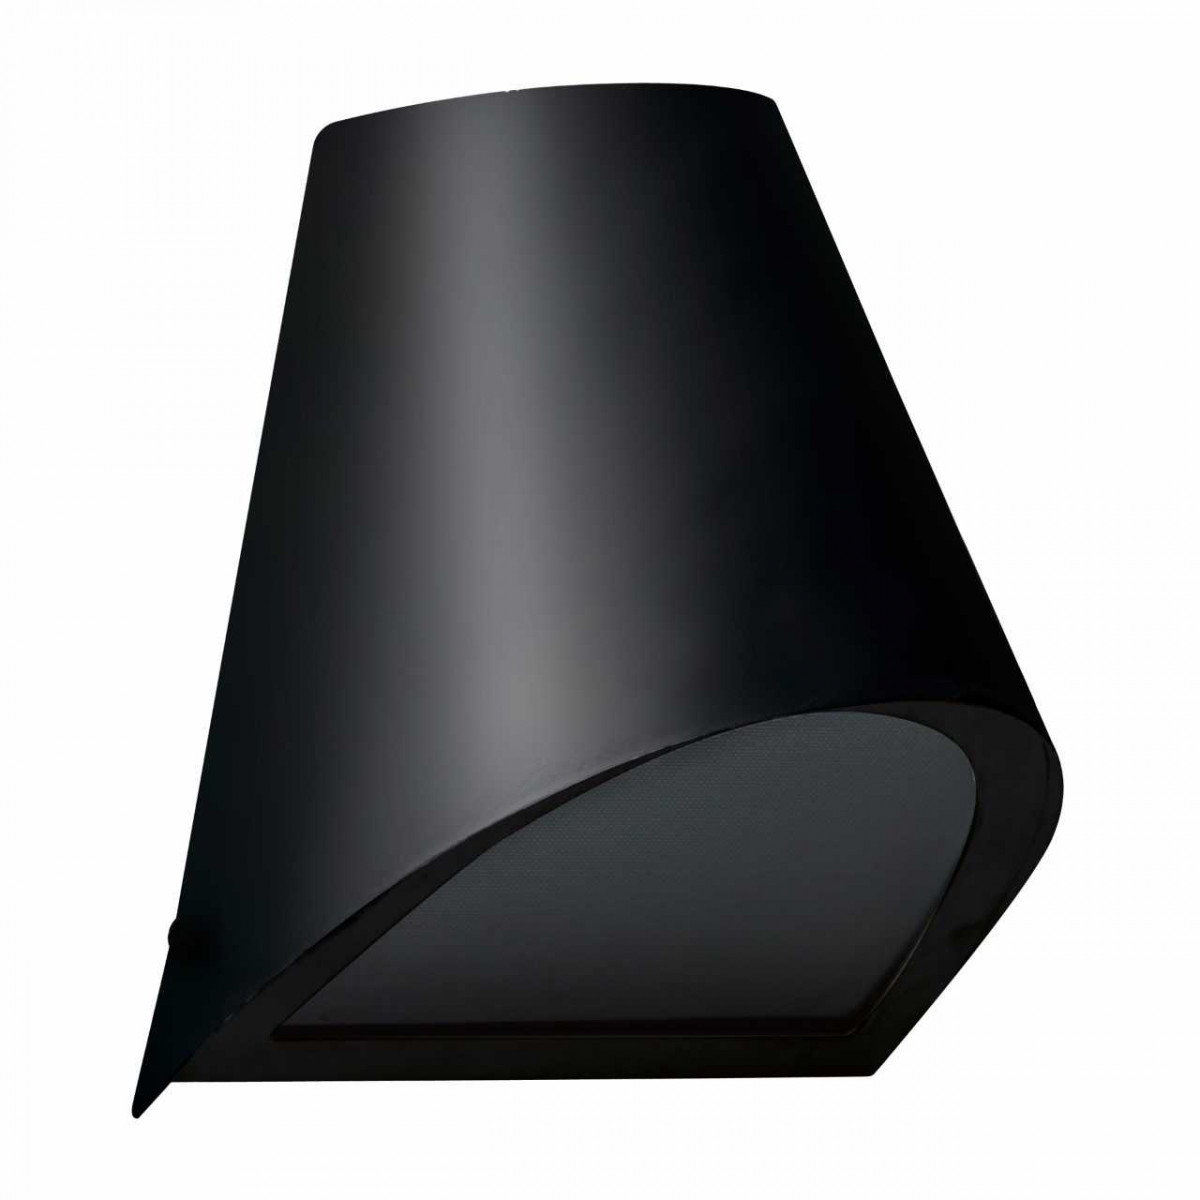 Zwarte wandlamp, moderne wandverlichting voor buiten, rond vormgegeven, geeft een mooi zacht strijklicht, ideaal voor aan de buitenmuur, gevel of padverlichting